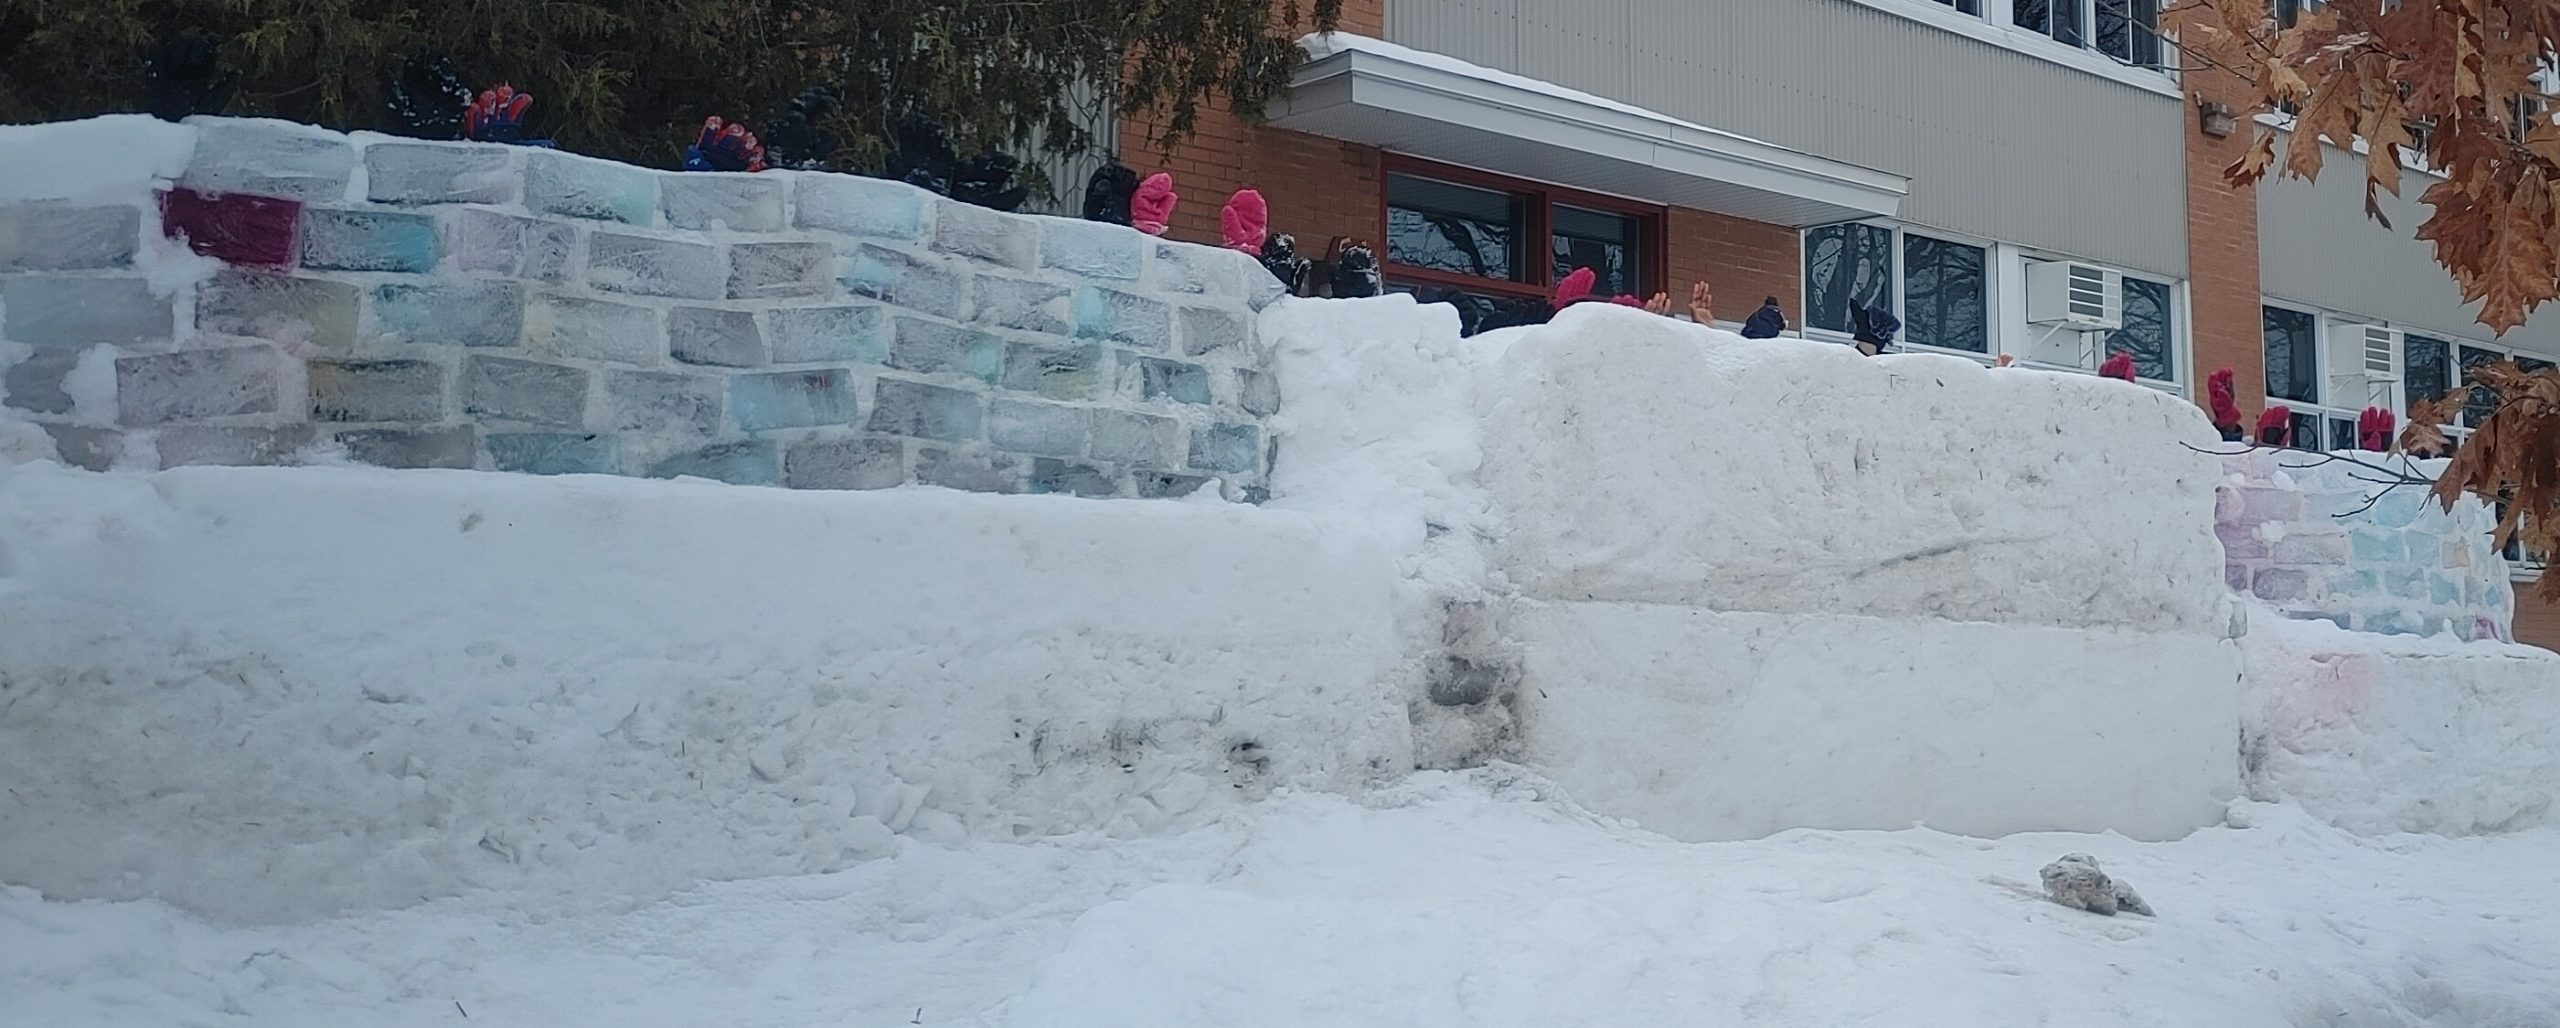 Un château de neige réalisé par des élèves de l’école de l’Arc-en-ciel